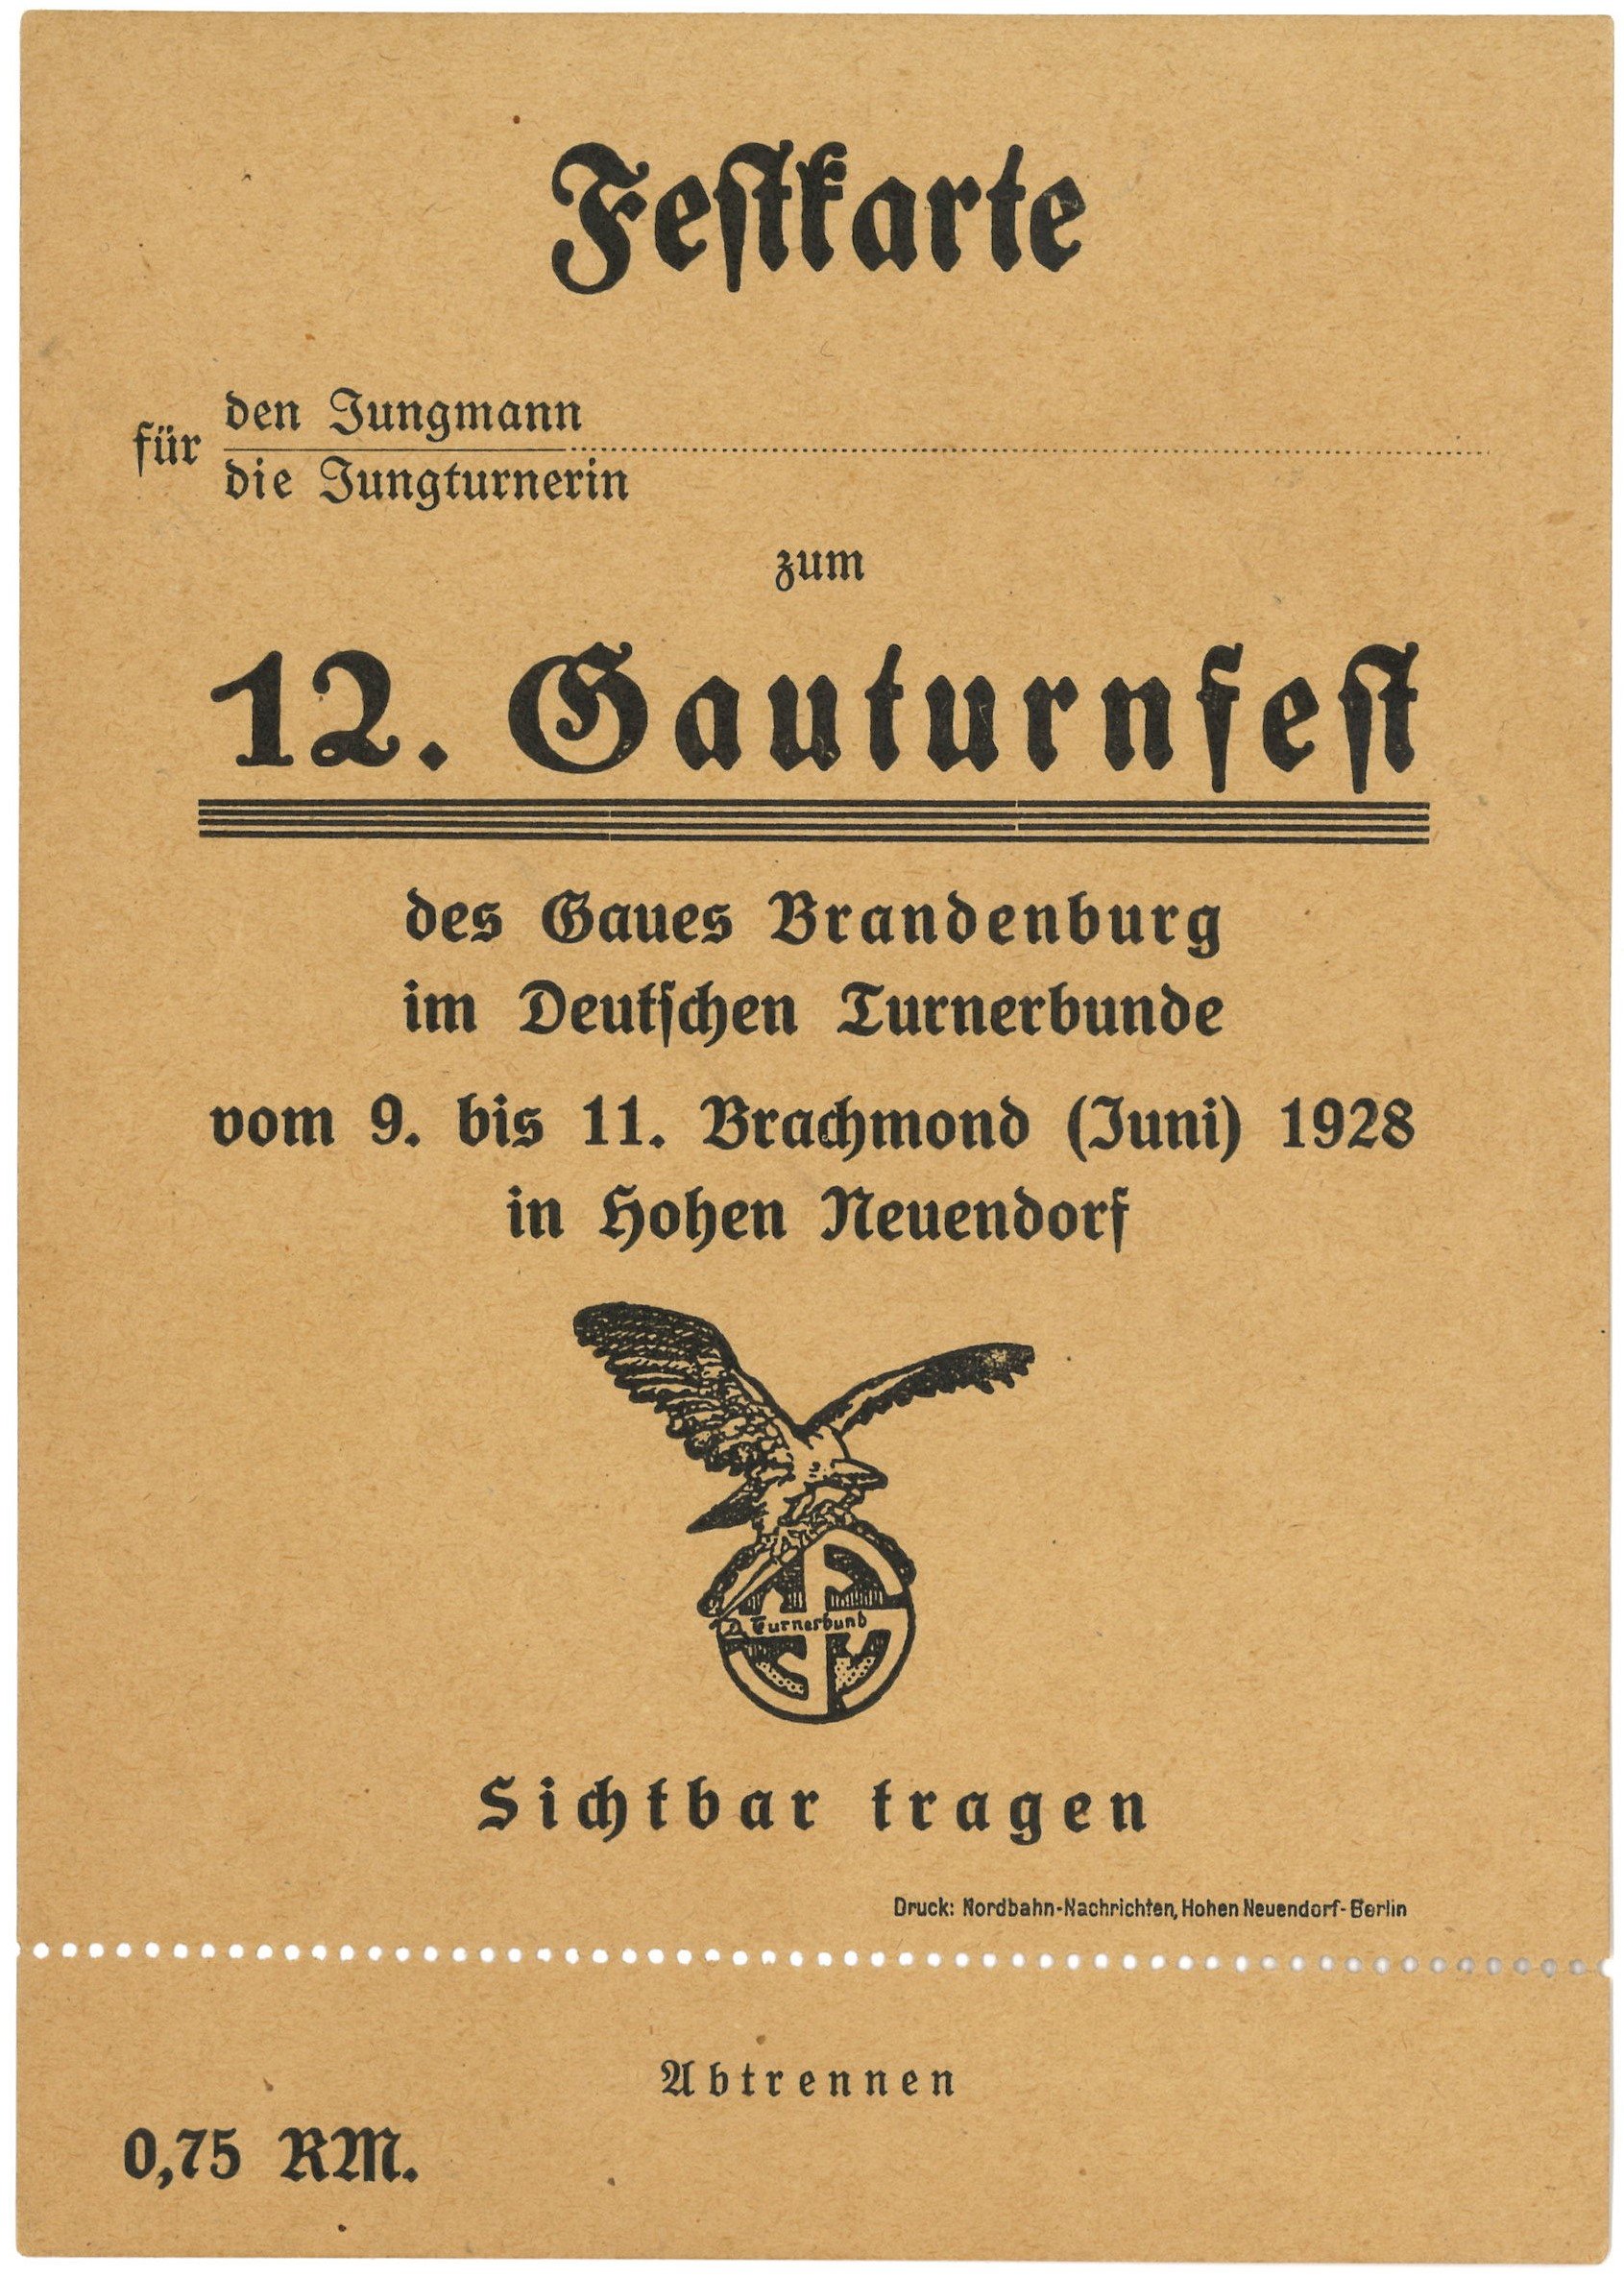 Hohen Neuendorf, 12. Gauturnfest 1928: Festkarte (Landesgeschichtliche Vereinigung für die Mark Brandenburg e.V., Archiv CC BY)